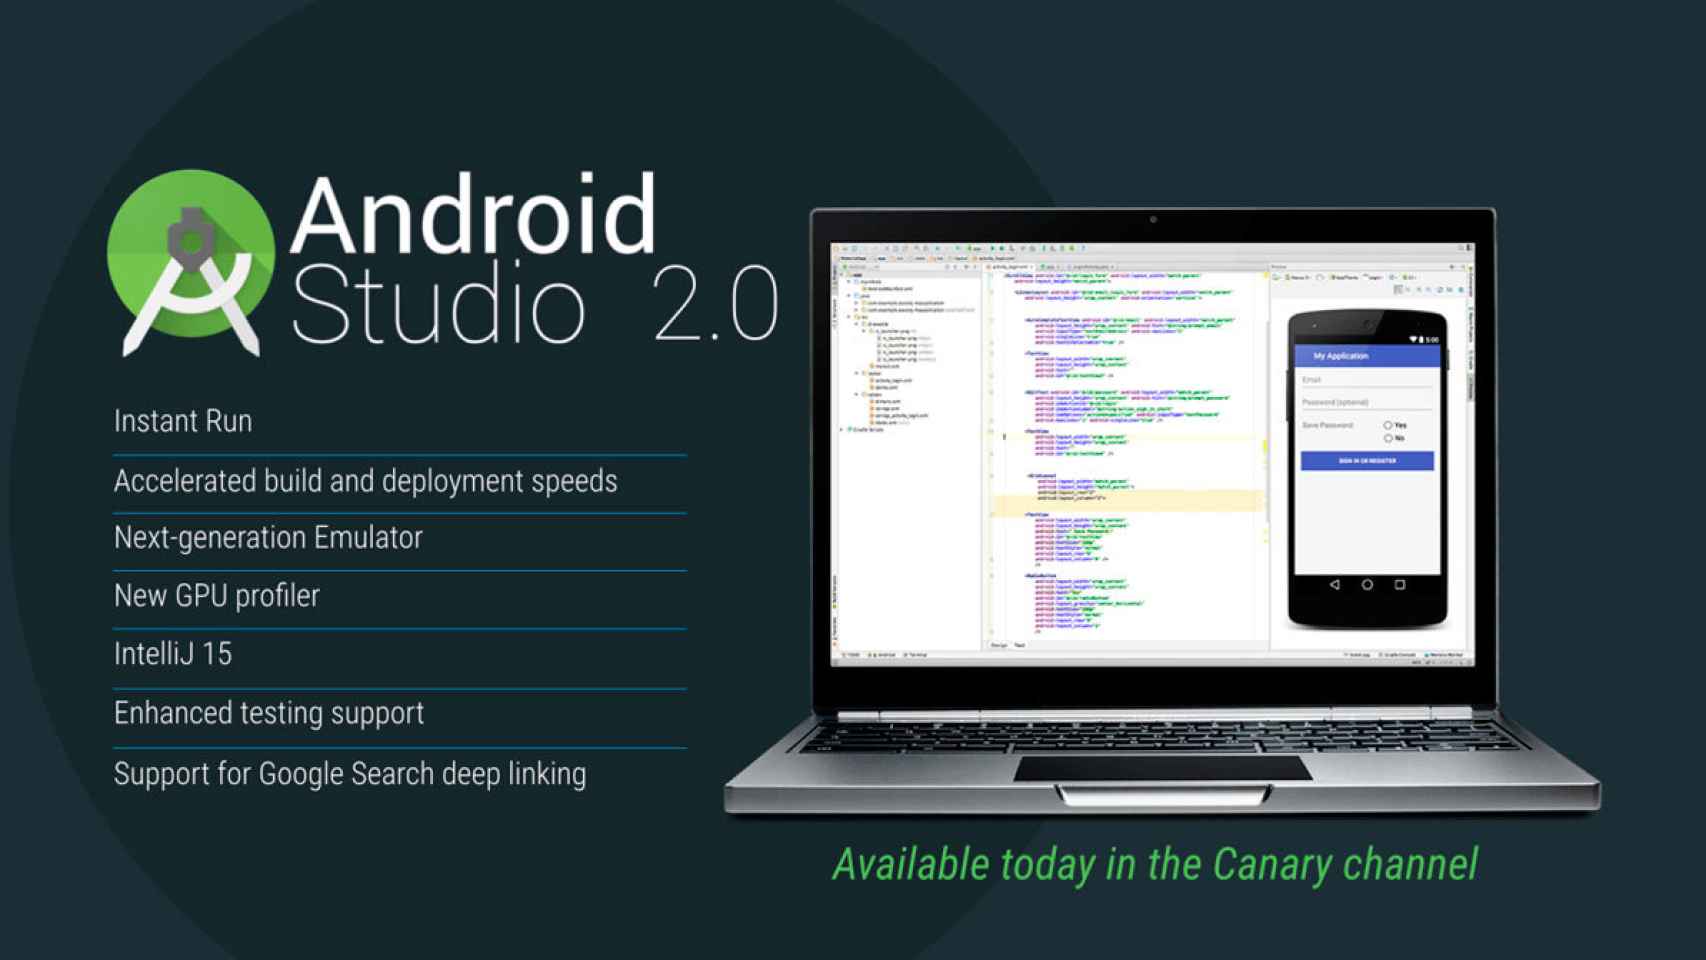 Android Studio 2.0, crea apps el doble de rápido con el entorno de desarrollo de Google